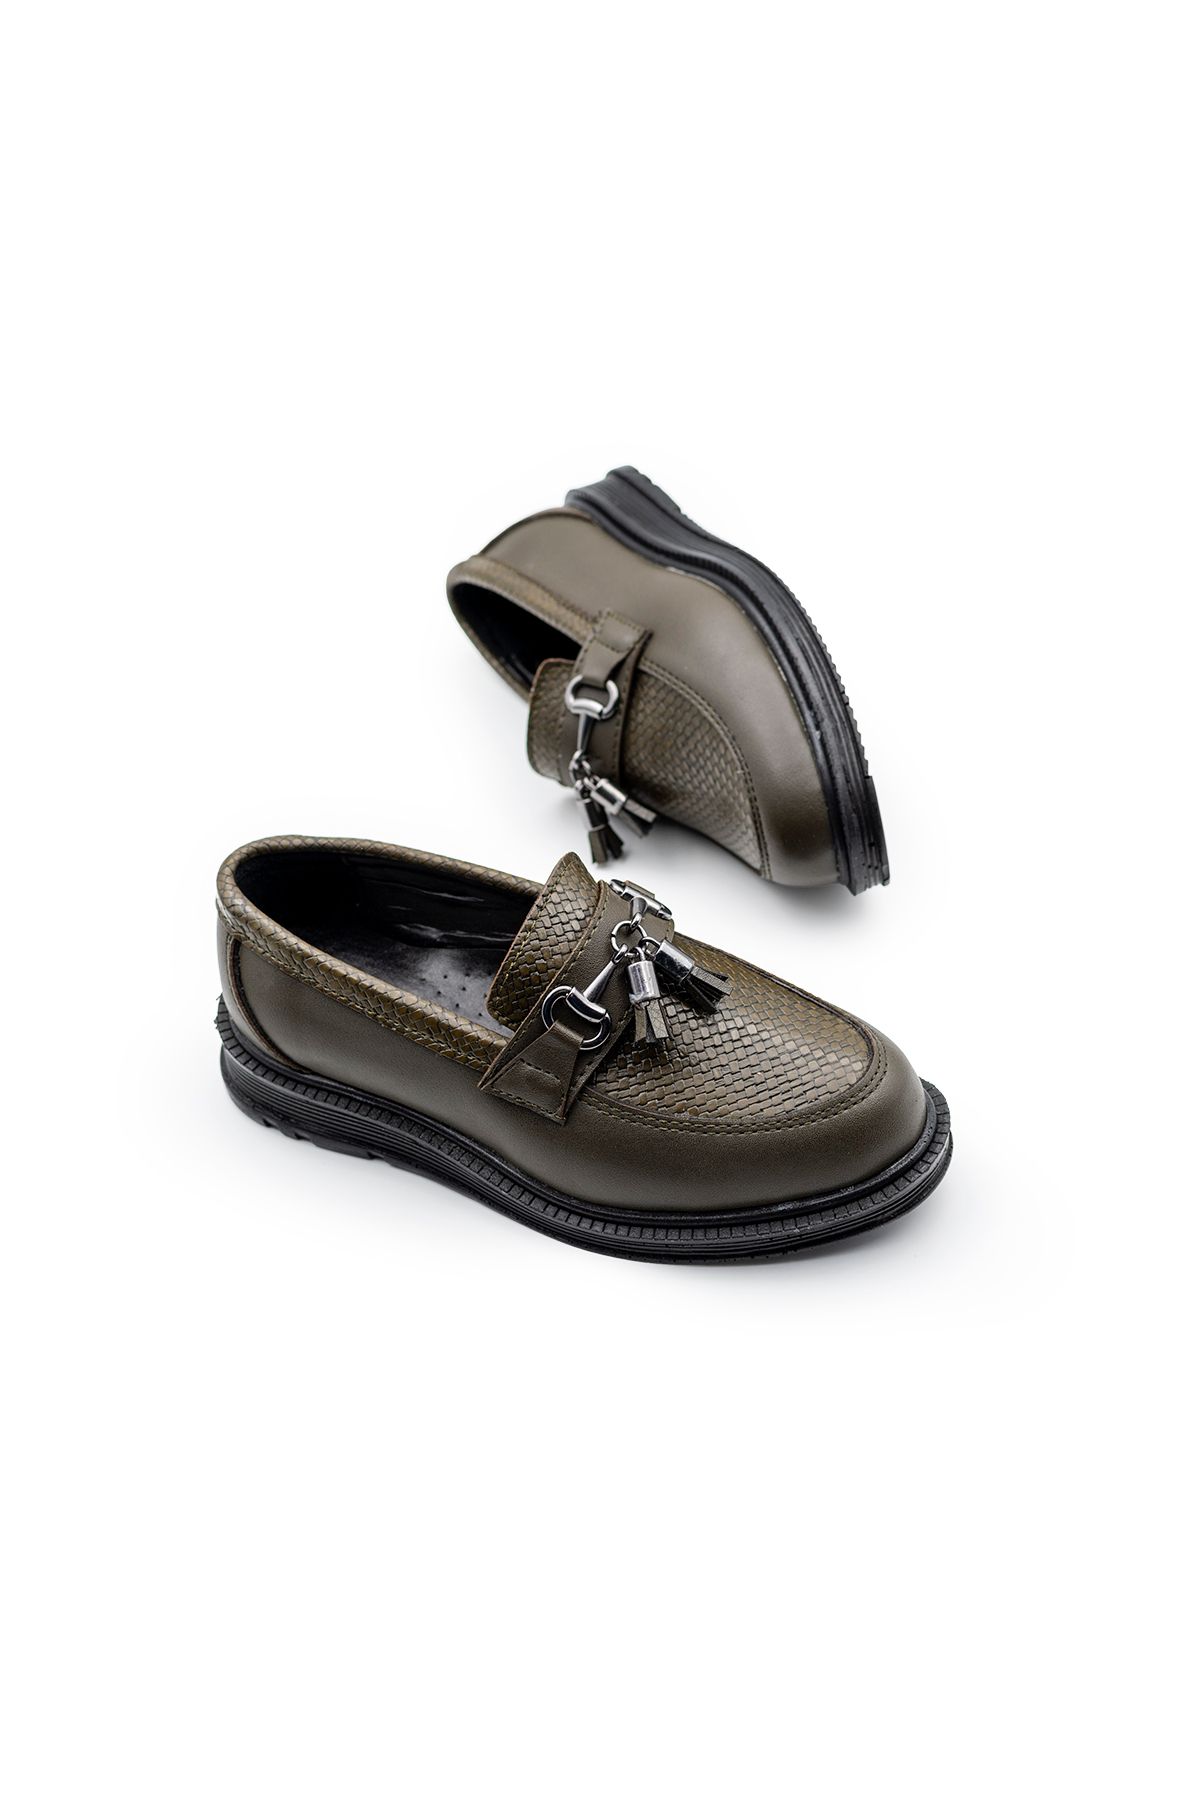 fiko Erkek Çocuk Günlük Klasik Ayakkabı FK1354